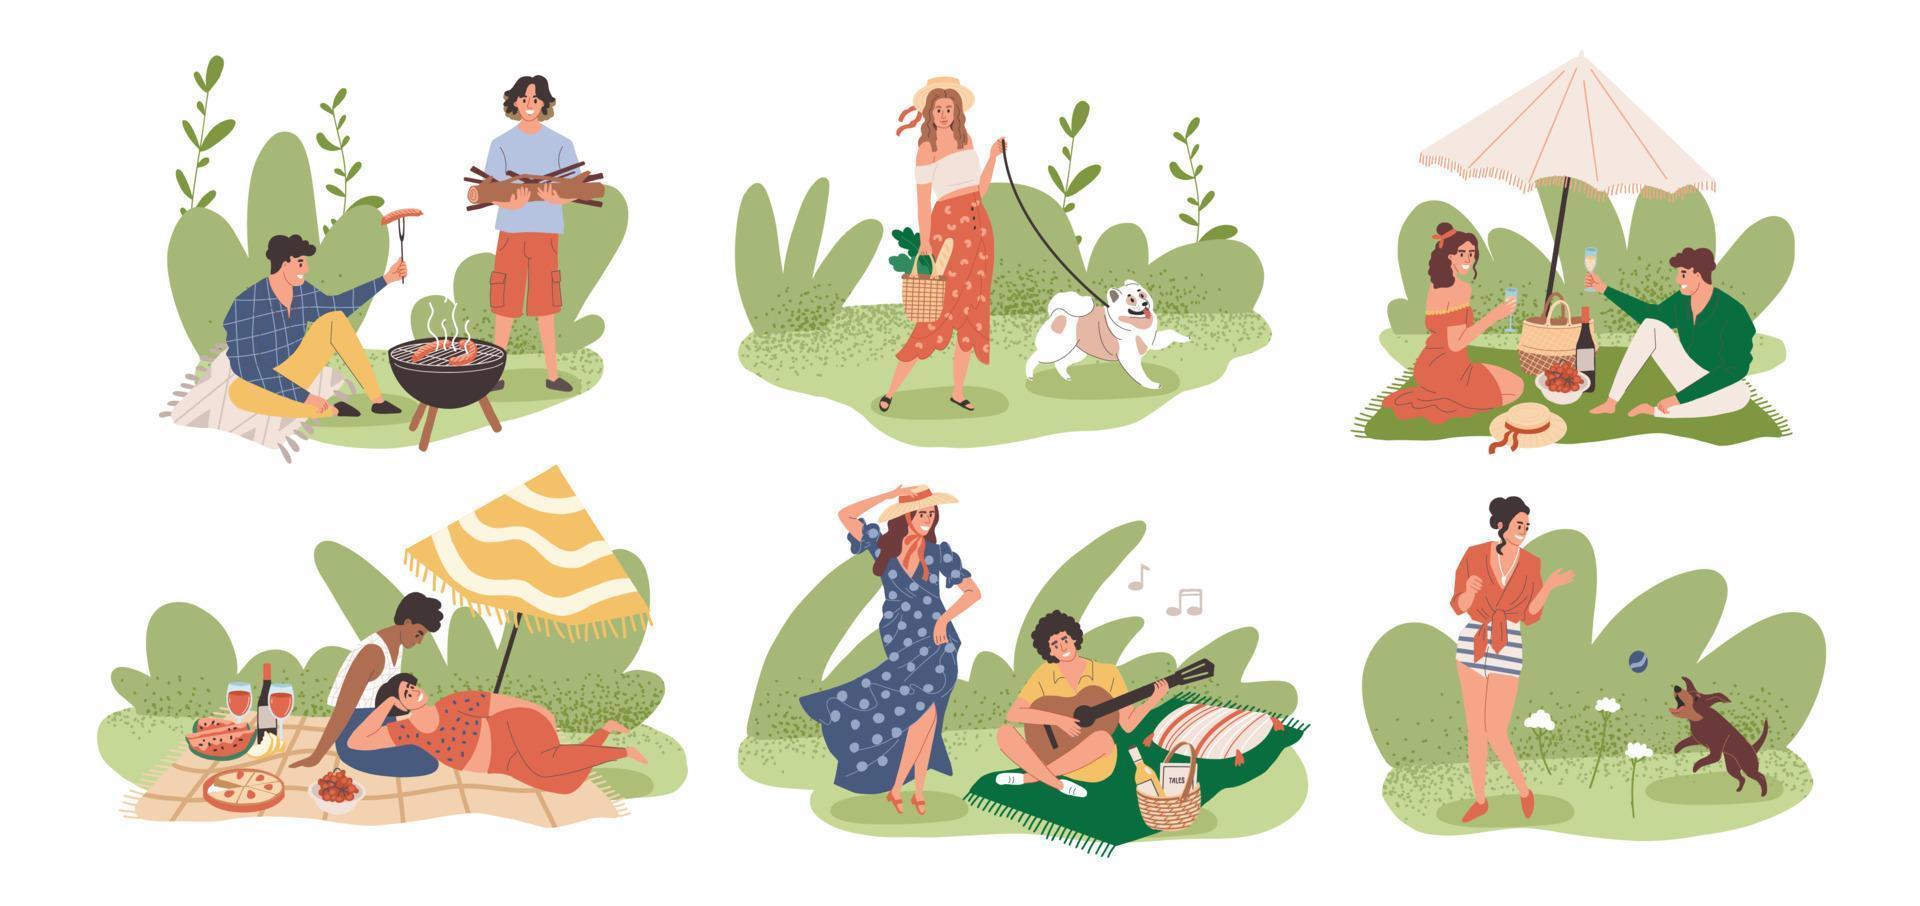 Menschen machen ein Picknick auf unterschiedliche Weise. Vektorzeichnung mit einem Sommerurlaub in der Natur. Die Leute gehen spazieren, spielen mit dem Hund, braten Würstchen, essen und haben Spaß vektor